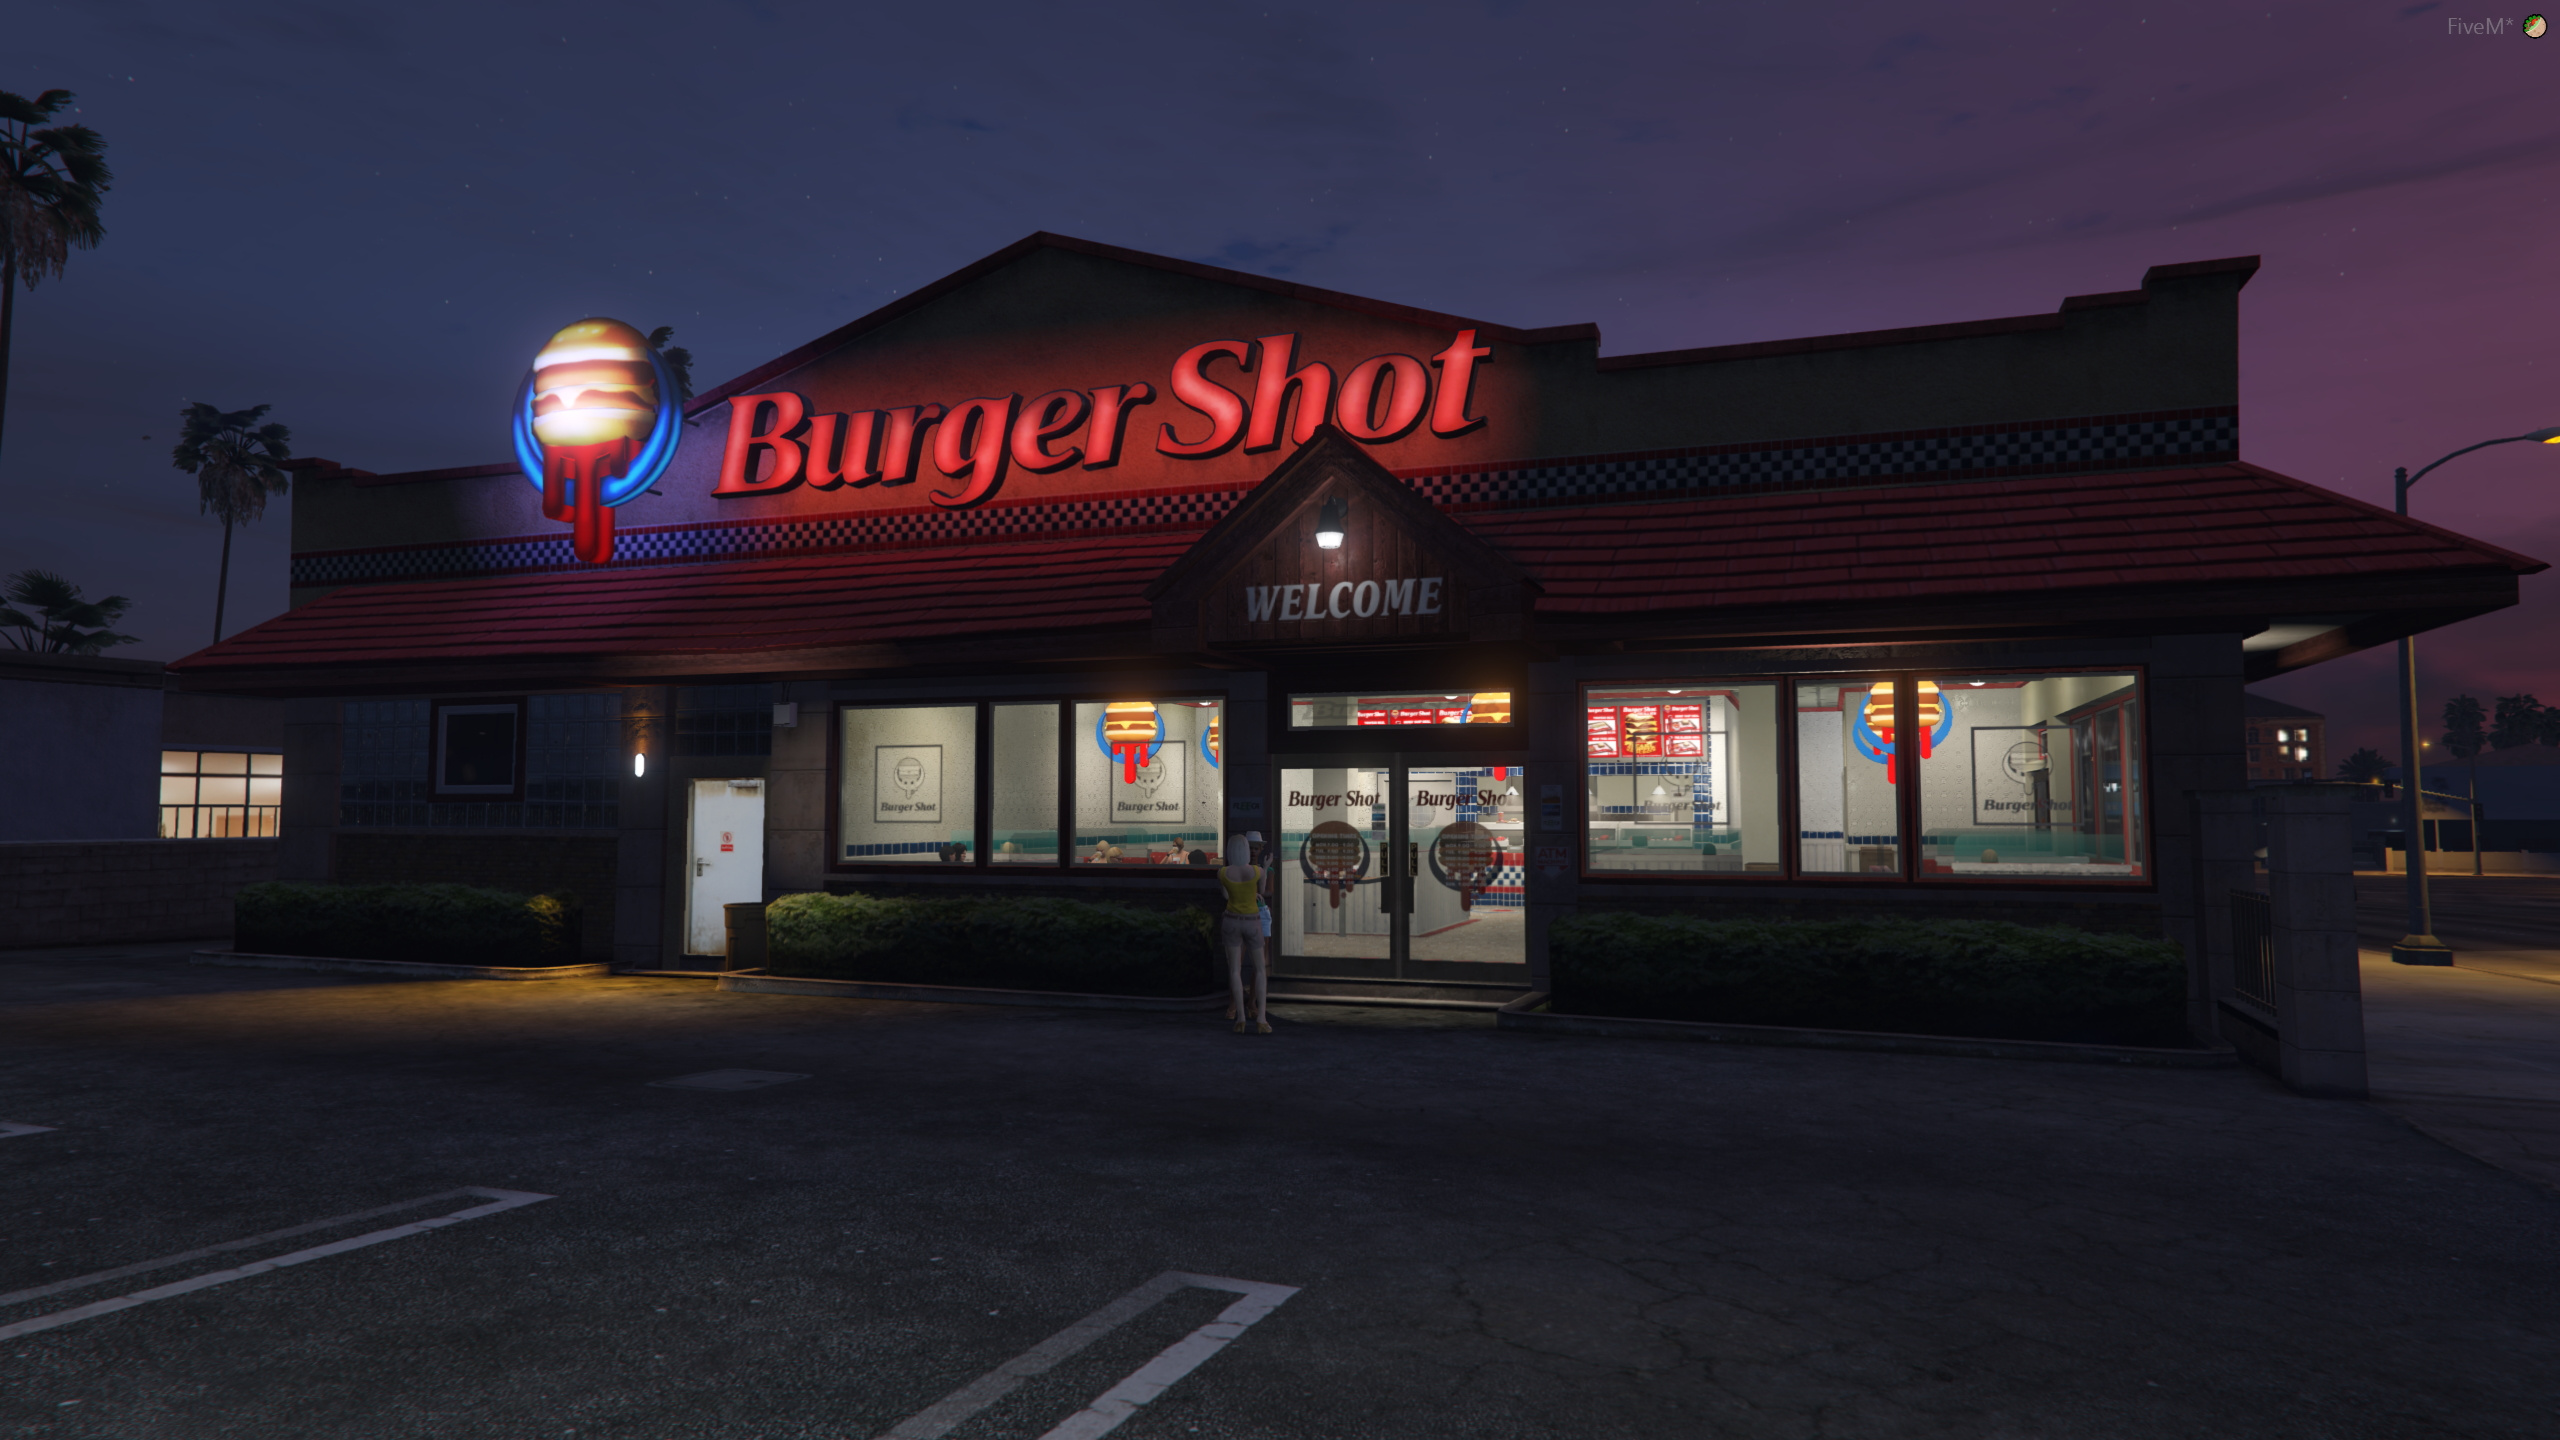 [GTA 5] Интерьер Burger Shot из GTA 4 для вашего сервера